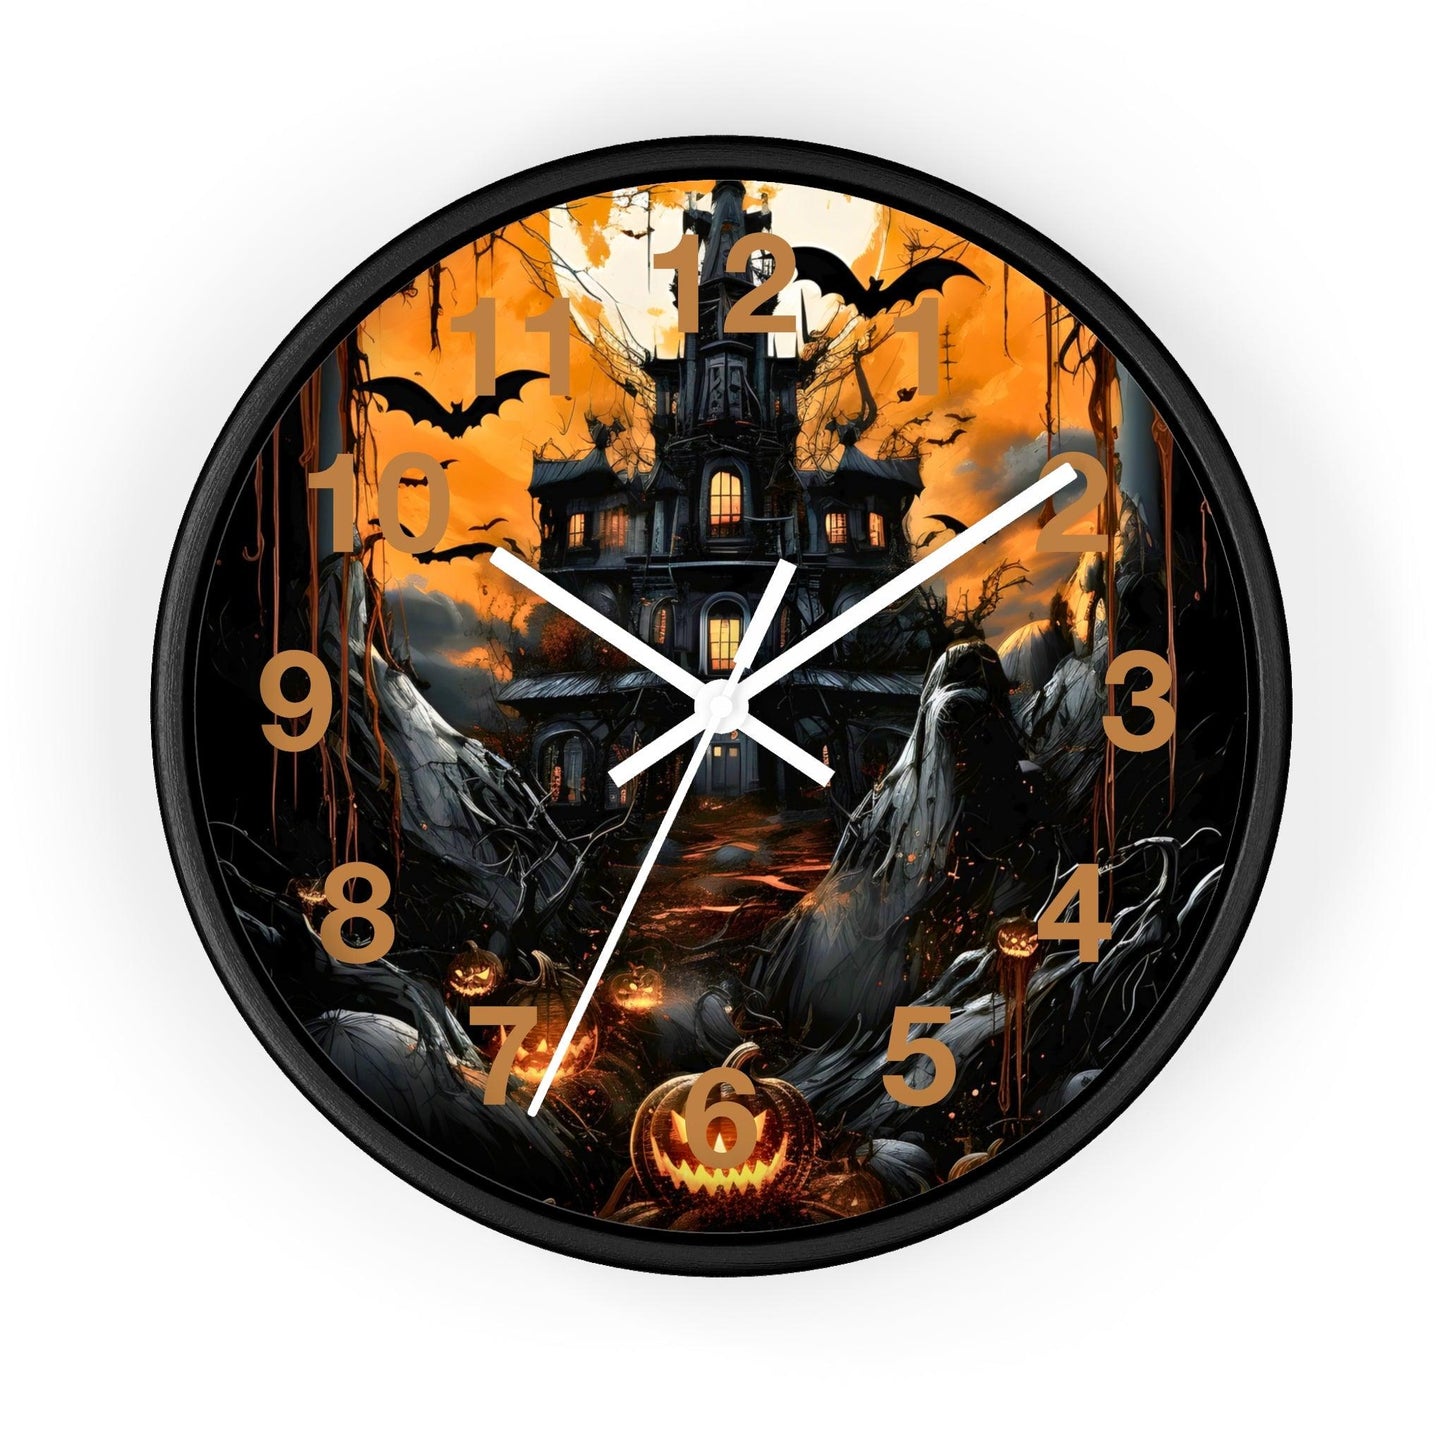 Halloween Ghost Wall Clock Halloween Wall Clocks Halloween Clock Fall Clock Halloween Decor Home decor